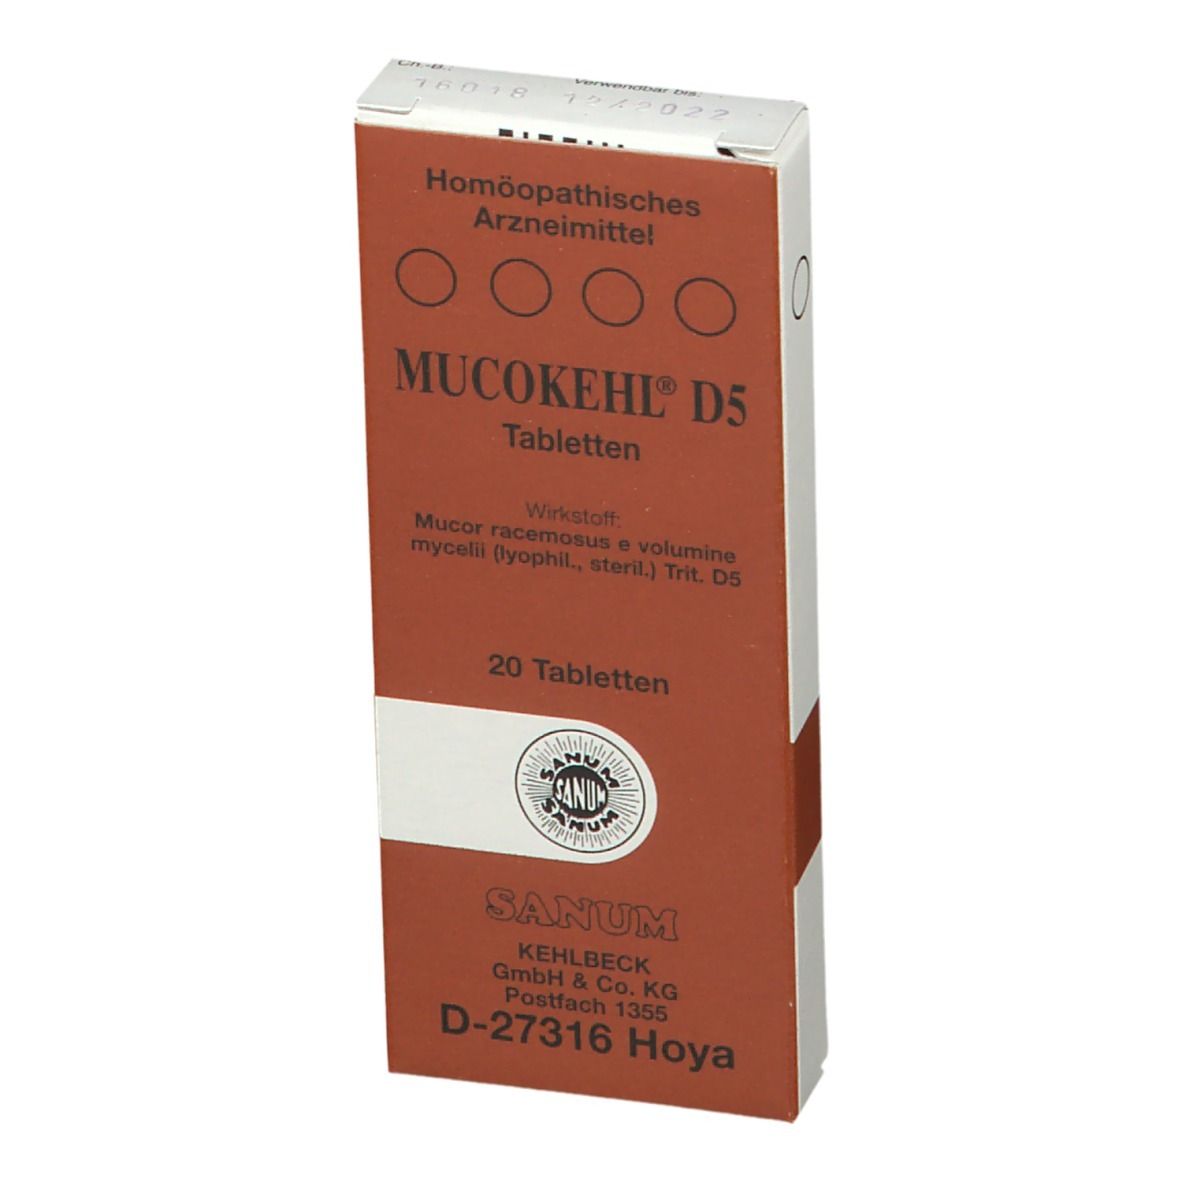 Mucokehl® D5 Tabletten